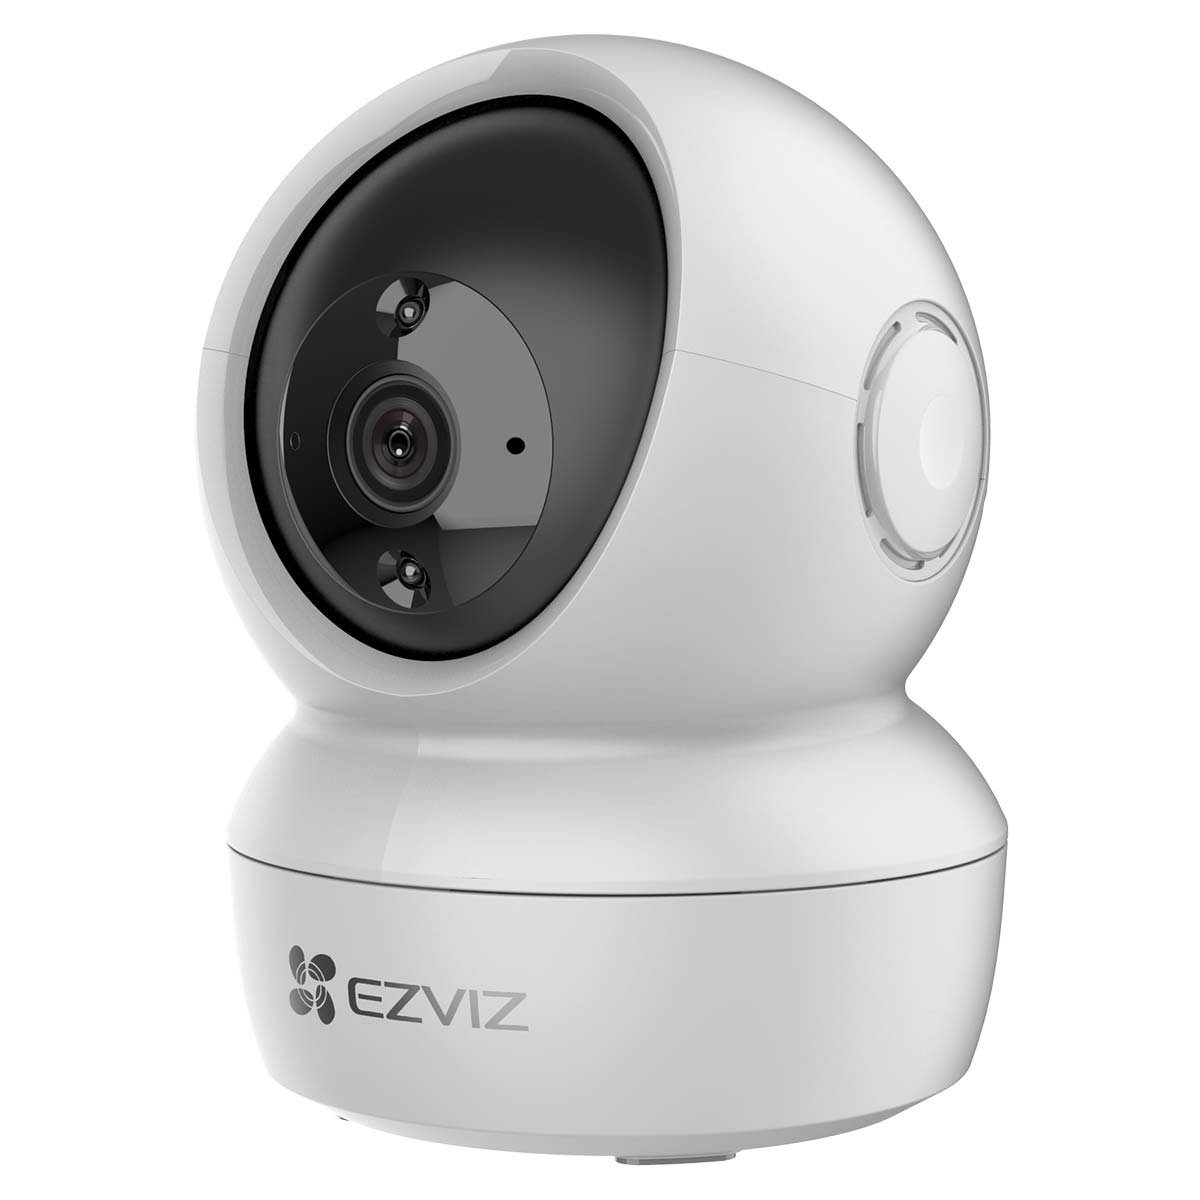 EZVIZ H6c Intelligente Schwenk/Neige WLAN Überwachungskamera (Innenbereich, 360°- Panoramablick, Bewegungserkennung mit Automatische Verfolgung, Zwei-Wege-Audio, IR Nachtsicht)